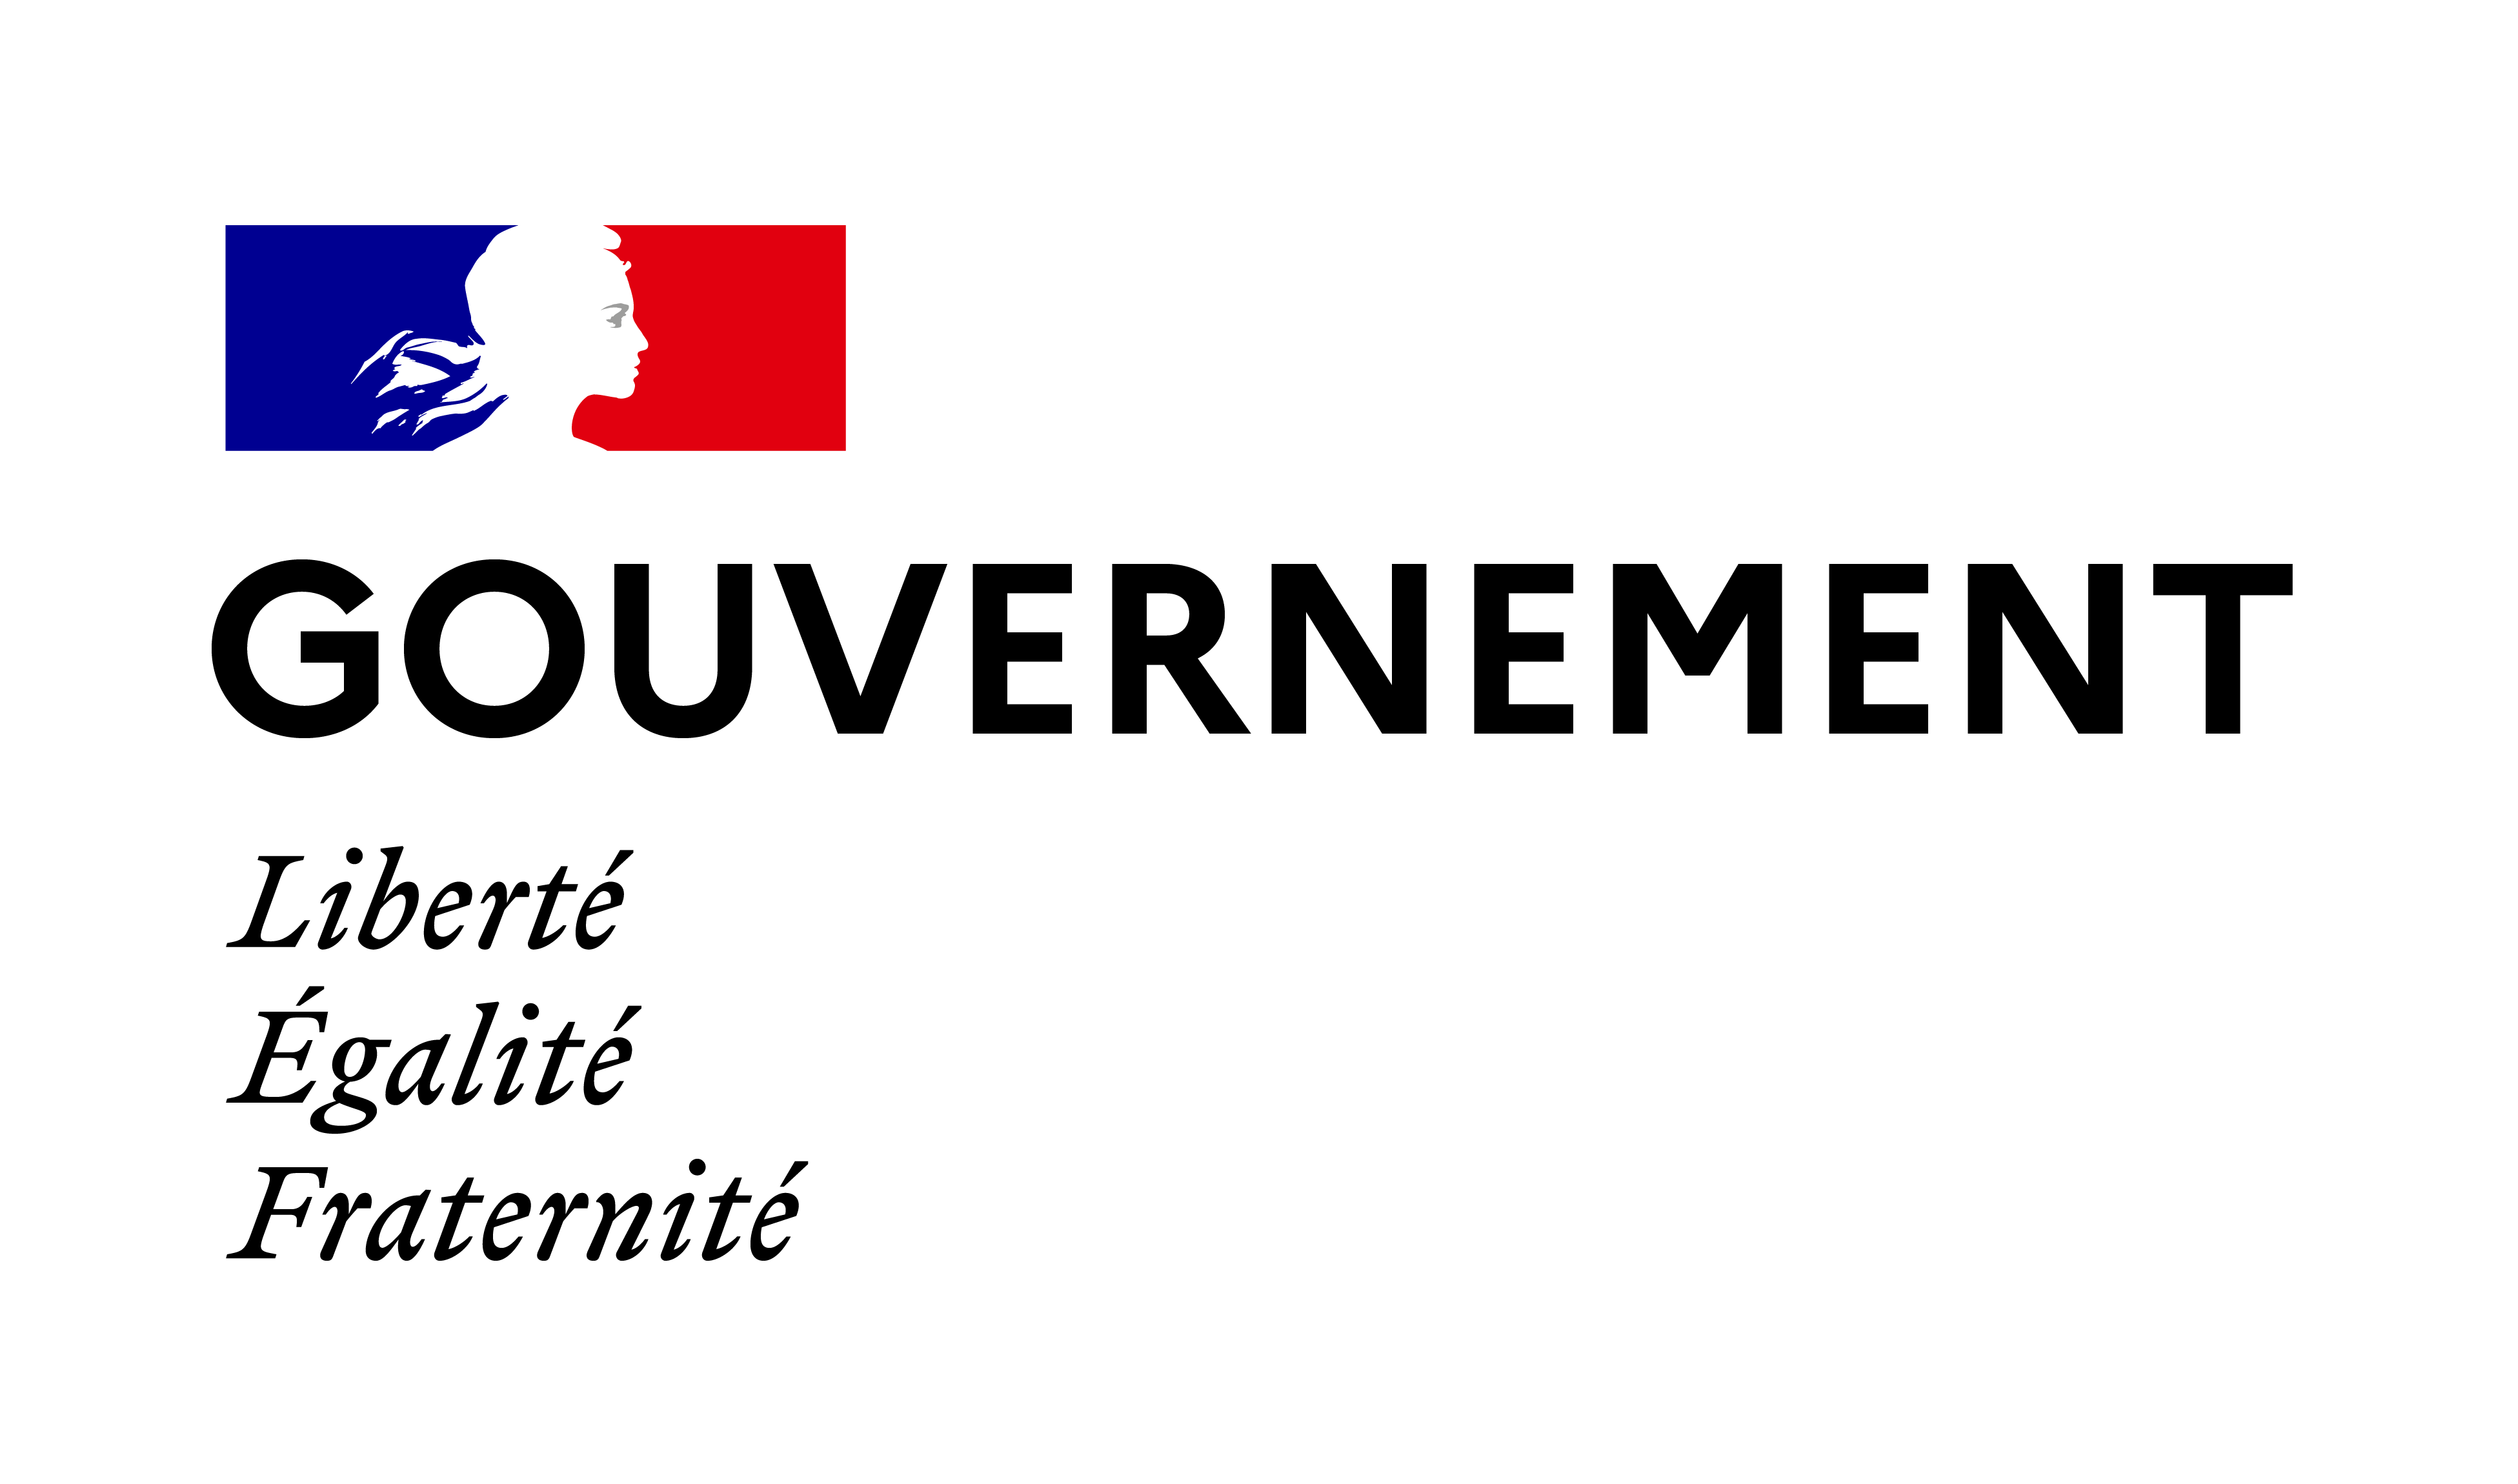 Gouvernement français